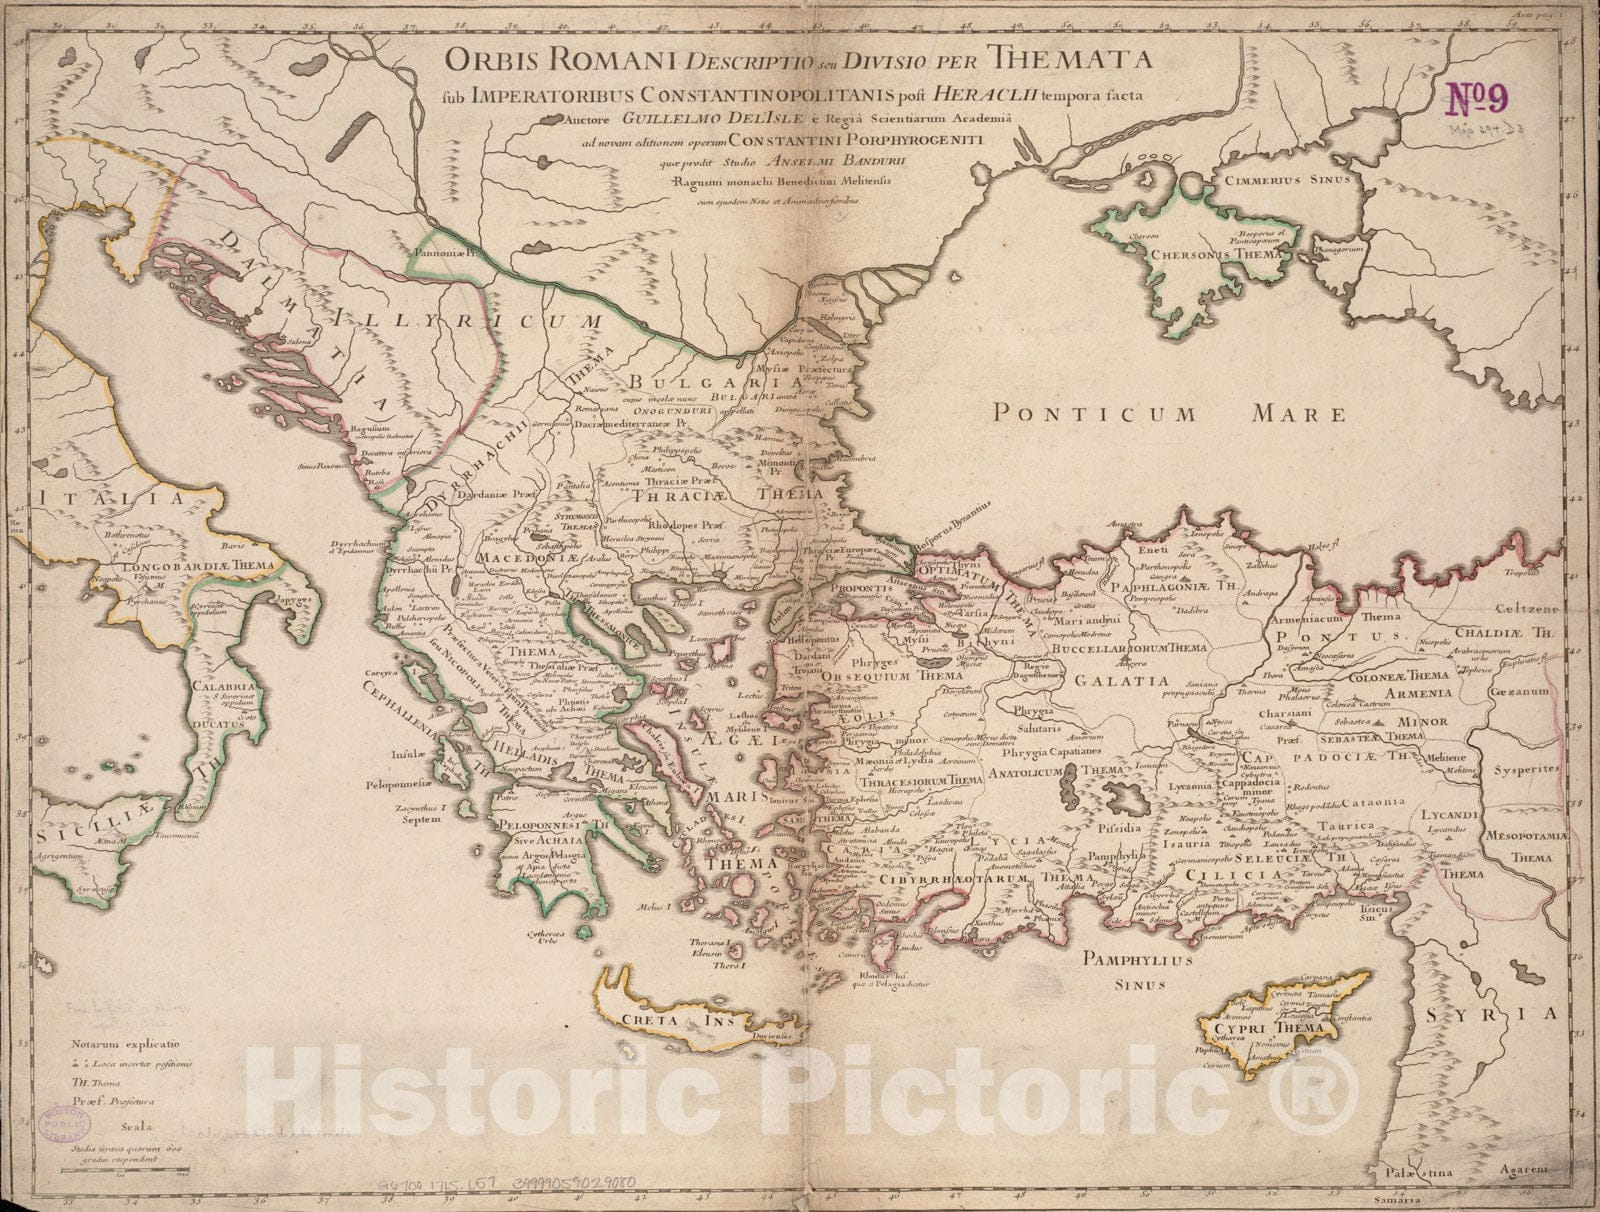 Historical Map, 1715 Orbis Romani descriptio : seu divisio per themata sub Imperatoribus Constantinopolitanis Post Heraclii tempora facta, Vintage Wall Art